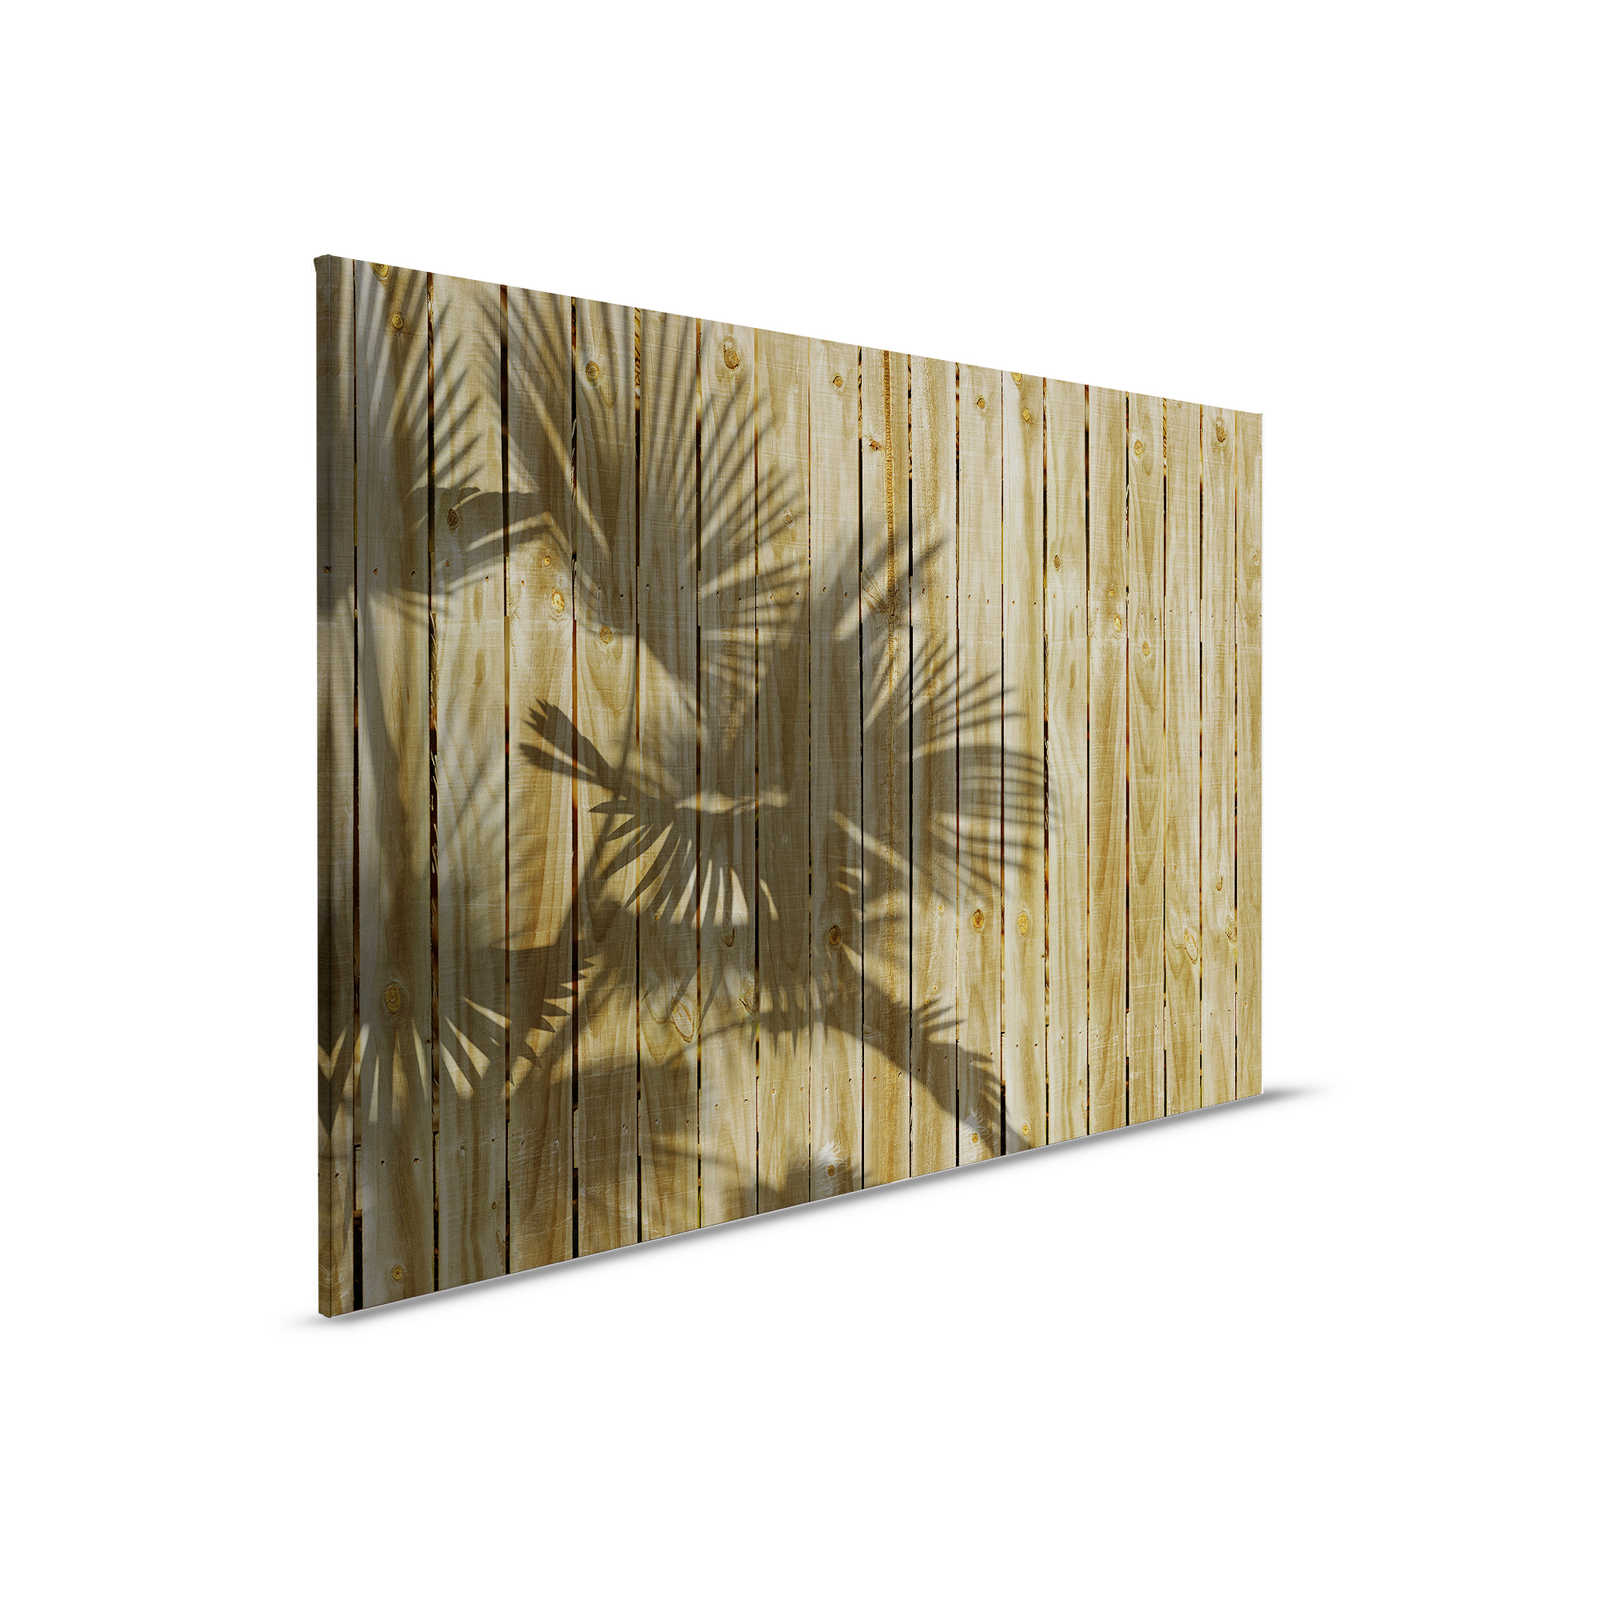         Leinwandbild mit Holzoptik und Palmblatt-Schatten – 0,90 m x 0,60 m
    